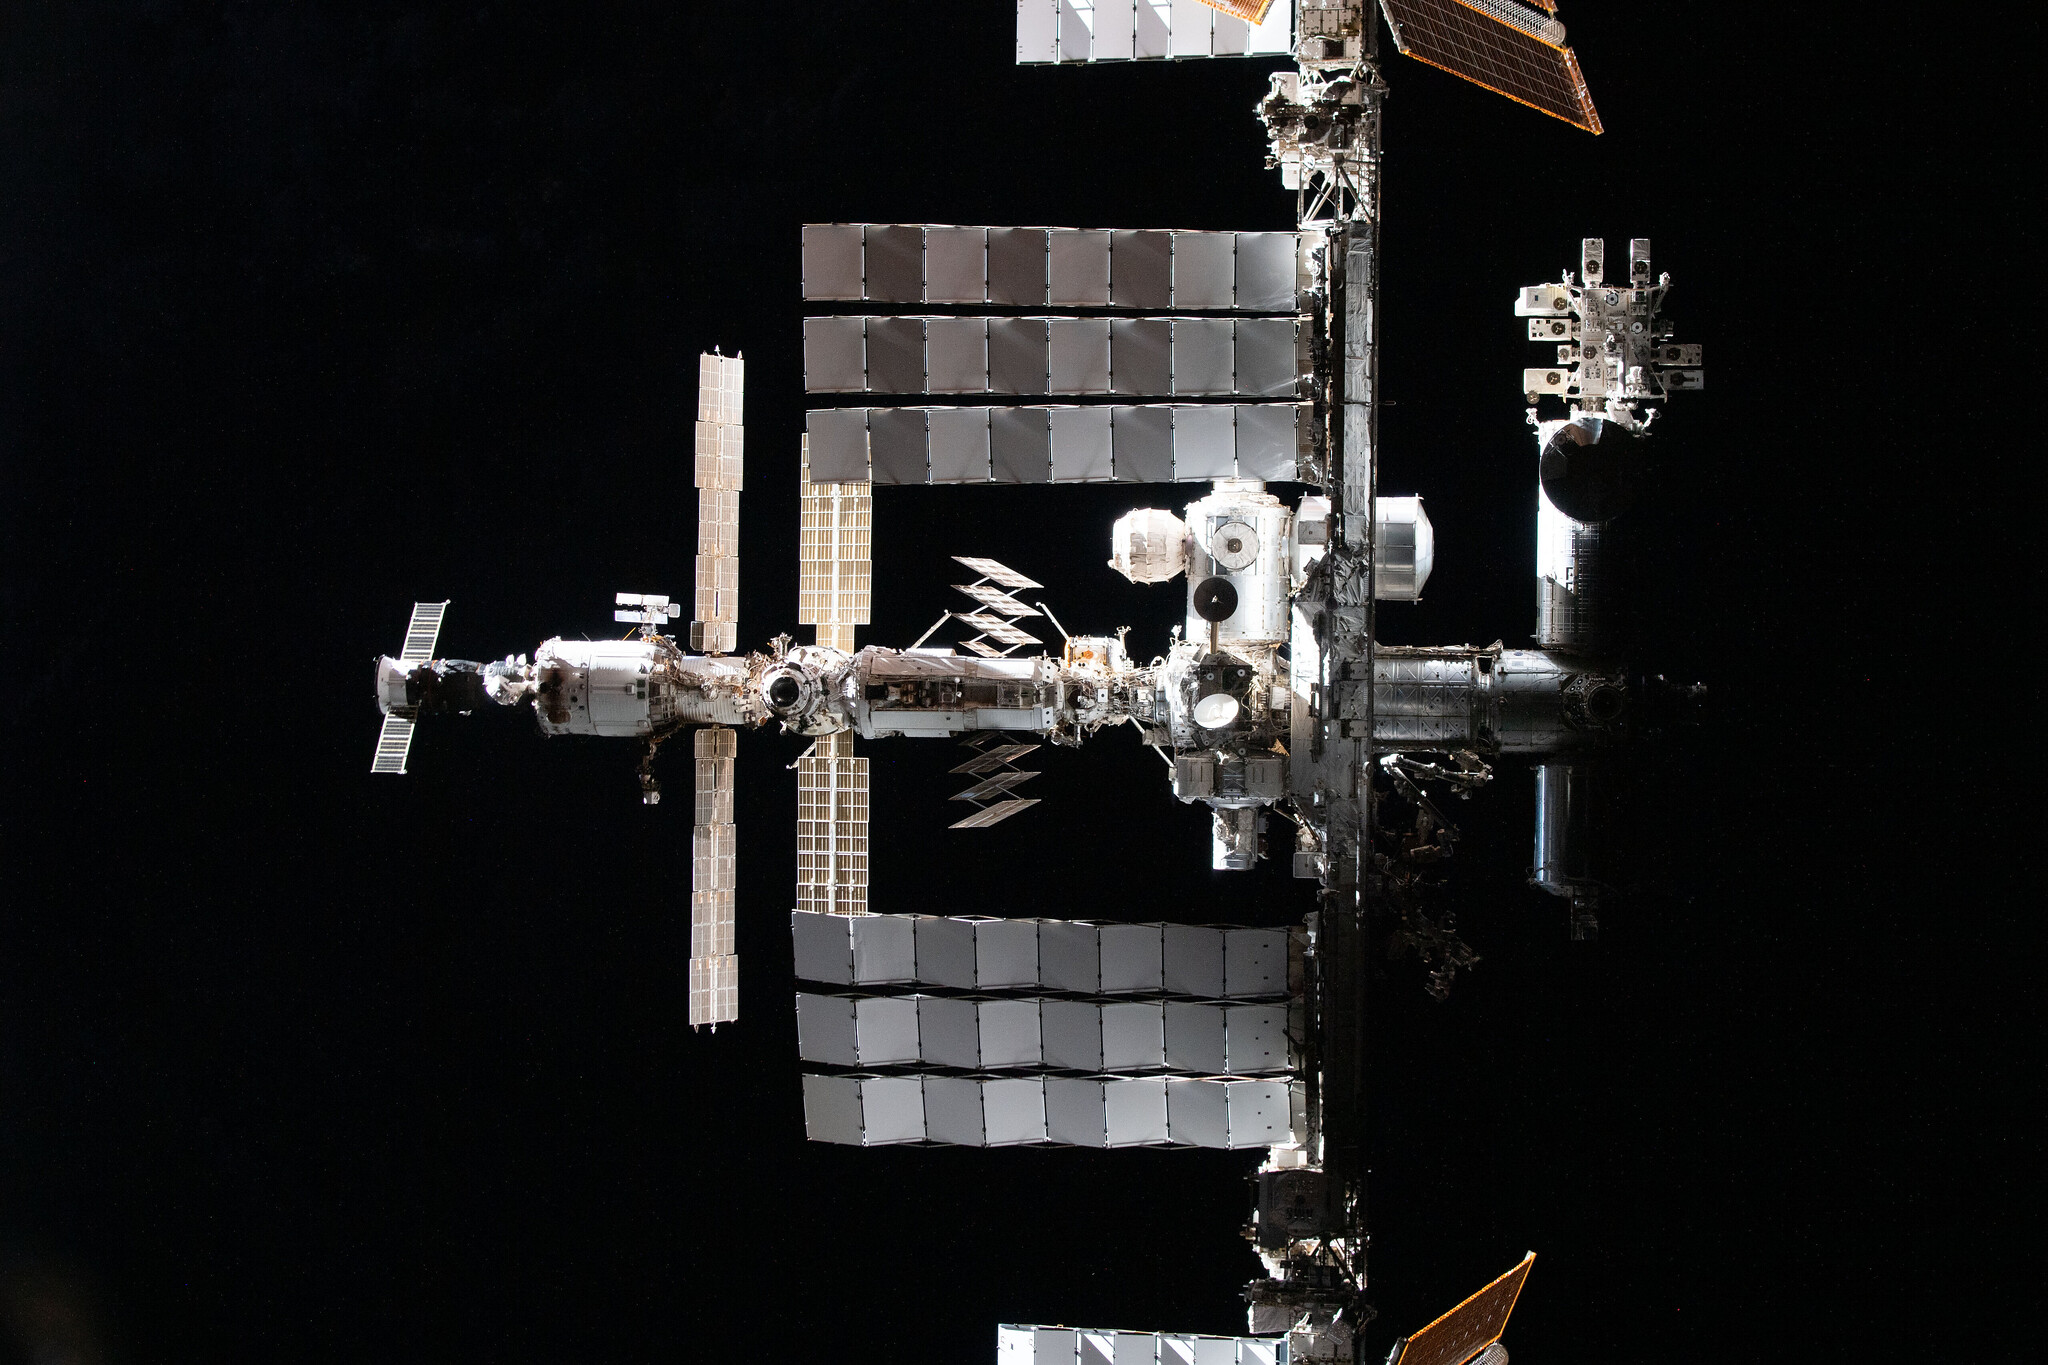 Nuevas imágenes de la Estación Espacial Internacional revelan que sigue siendo una joya